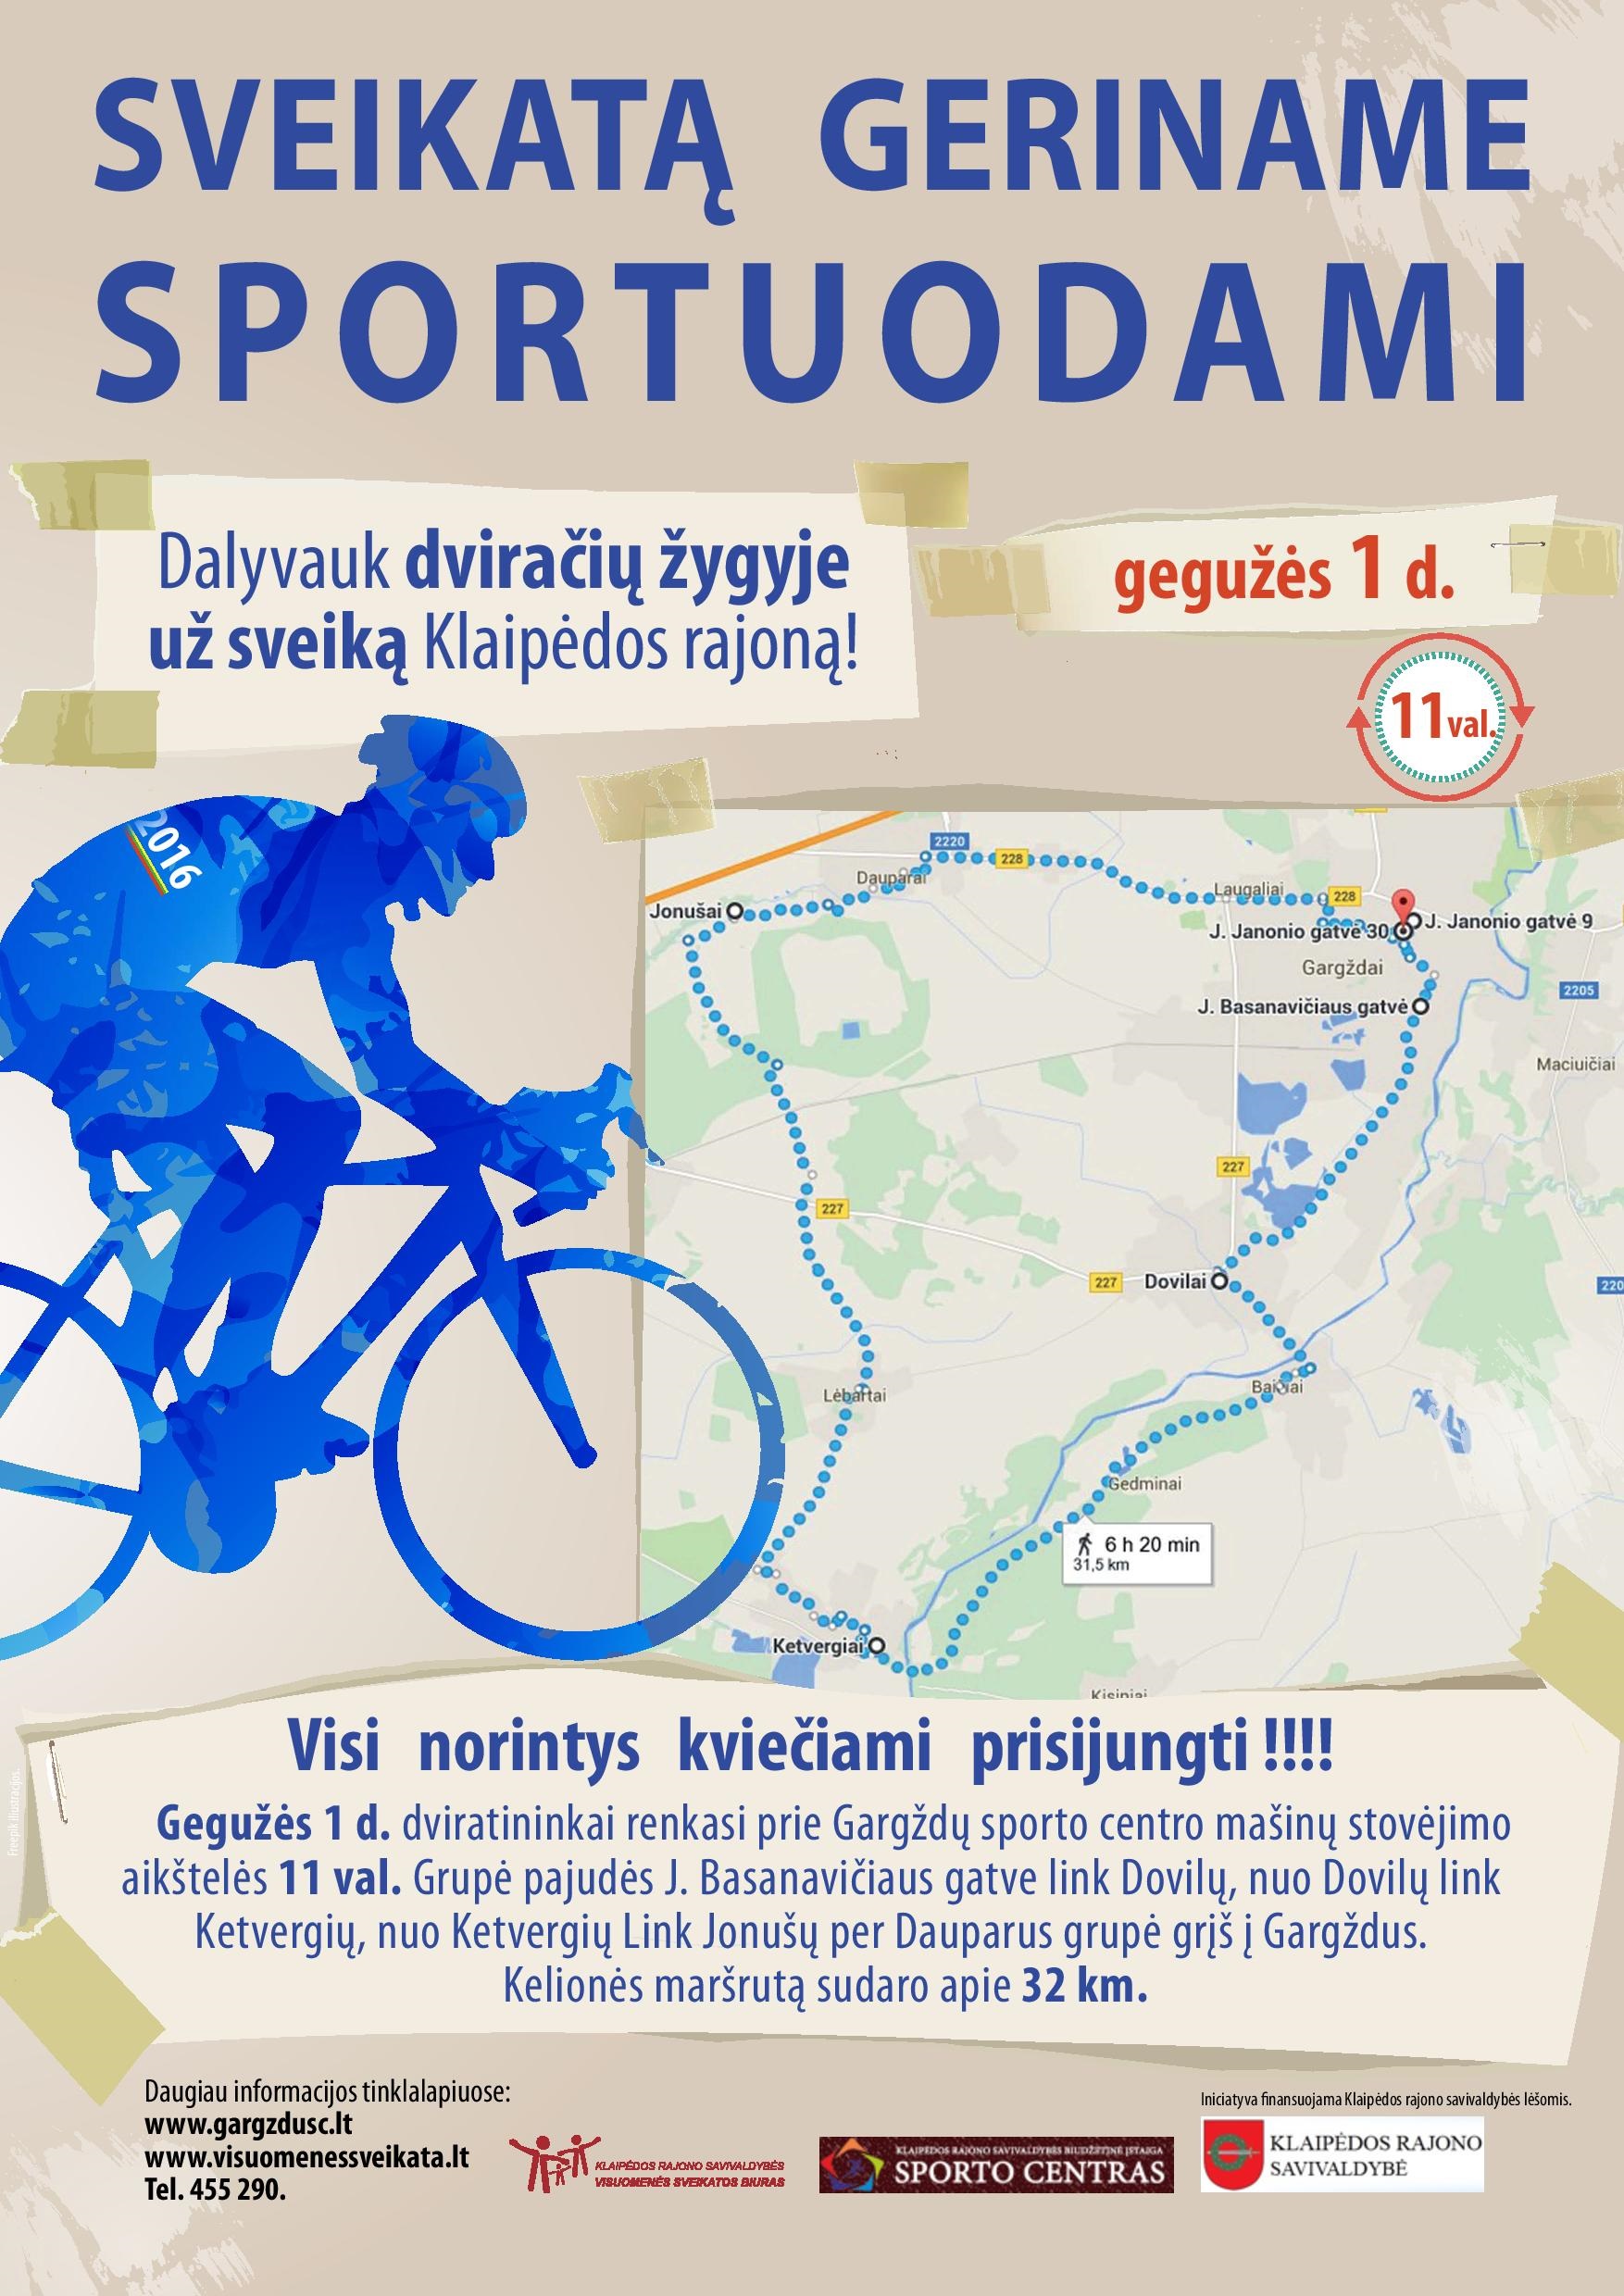 Dalyvauk dviračių žygyje už sveiką Klaipėdos rajoną